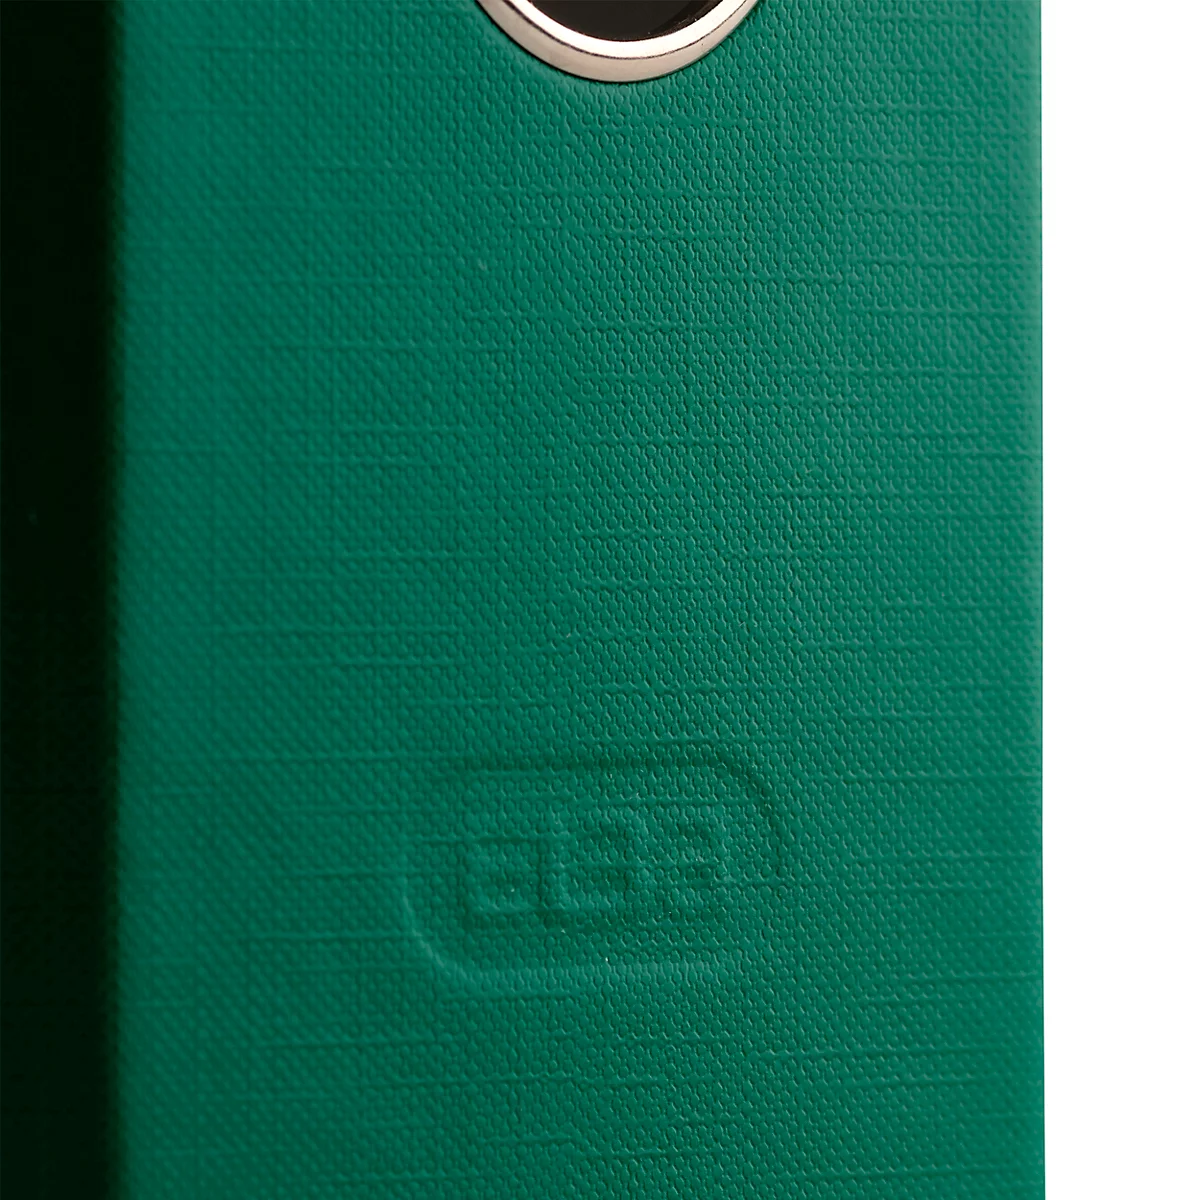 ELBA Ordner smart, DIN A4, Rückenbreite 80 mm, 10 Stück, grün